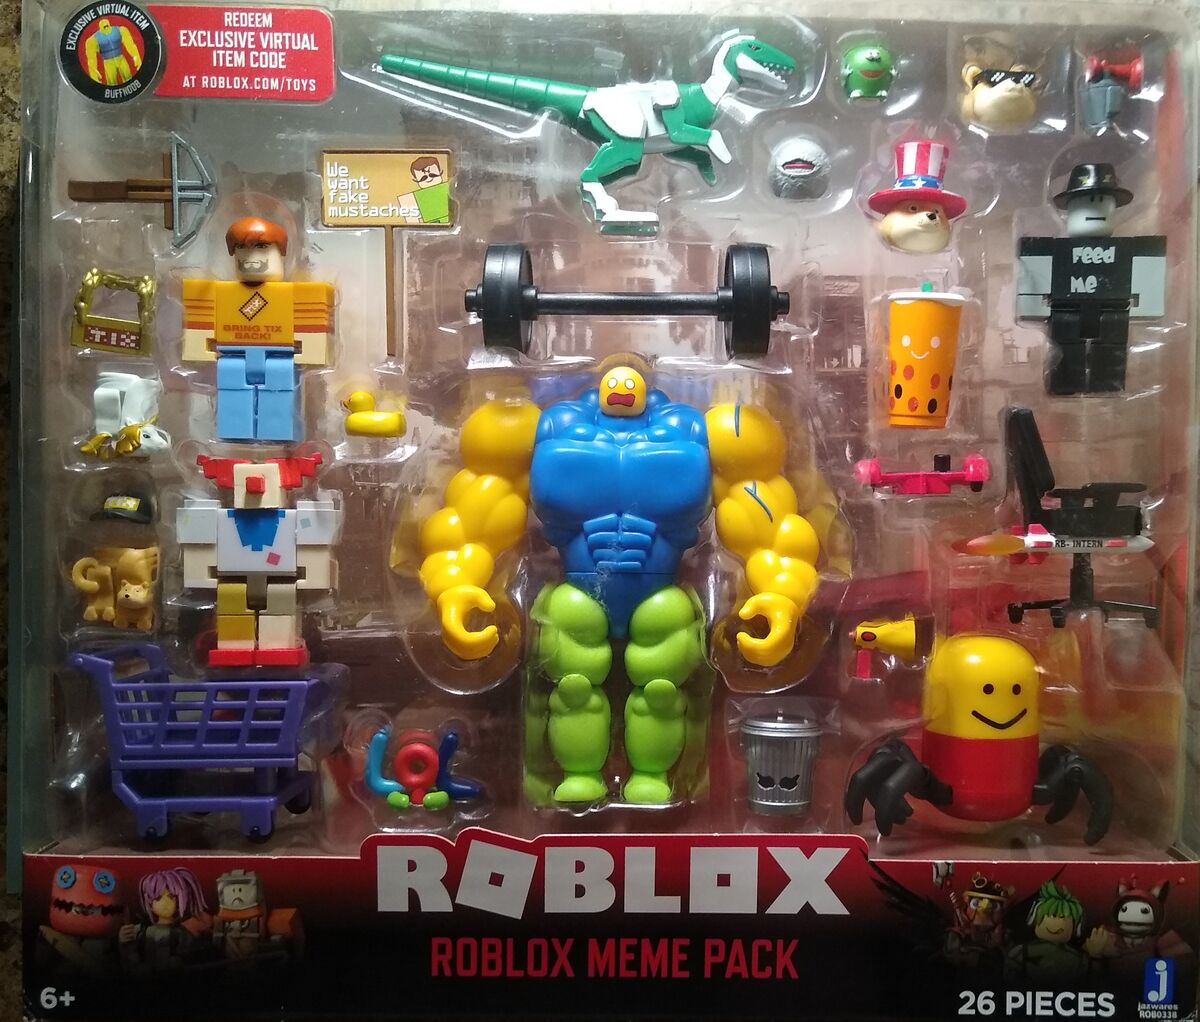 Roblox Action Collection Meme Pack Playset Figure Clown Plus Tix Fan